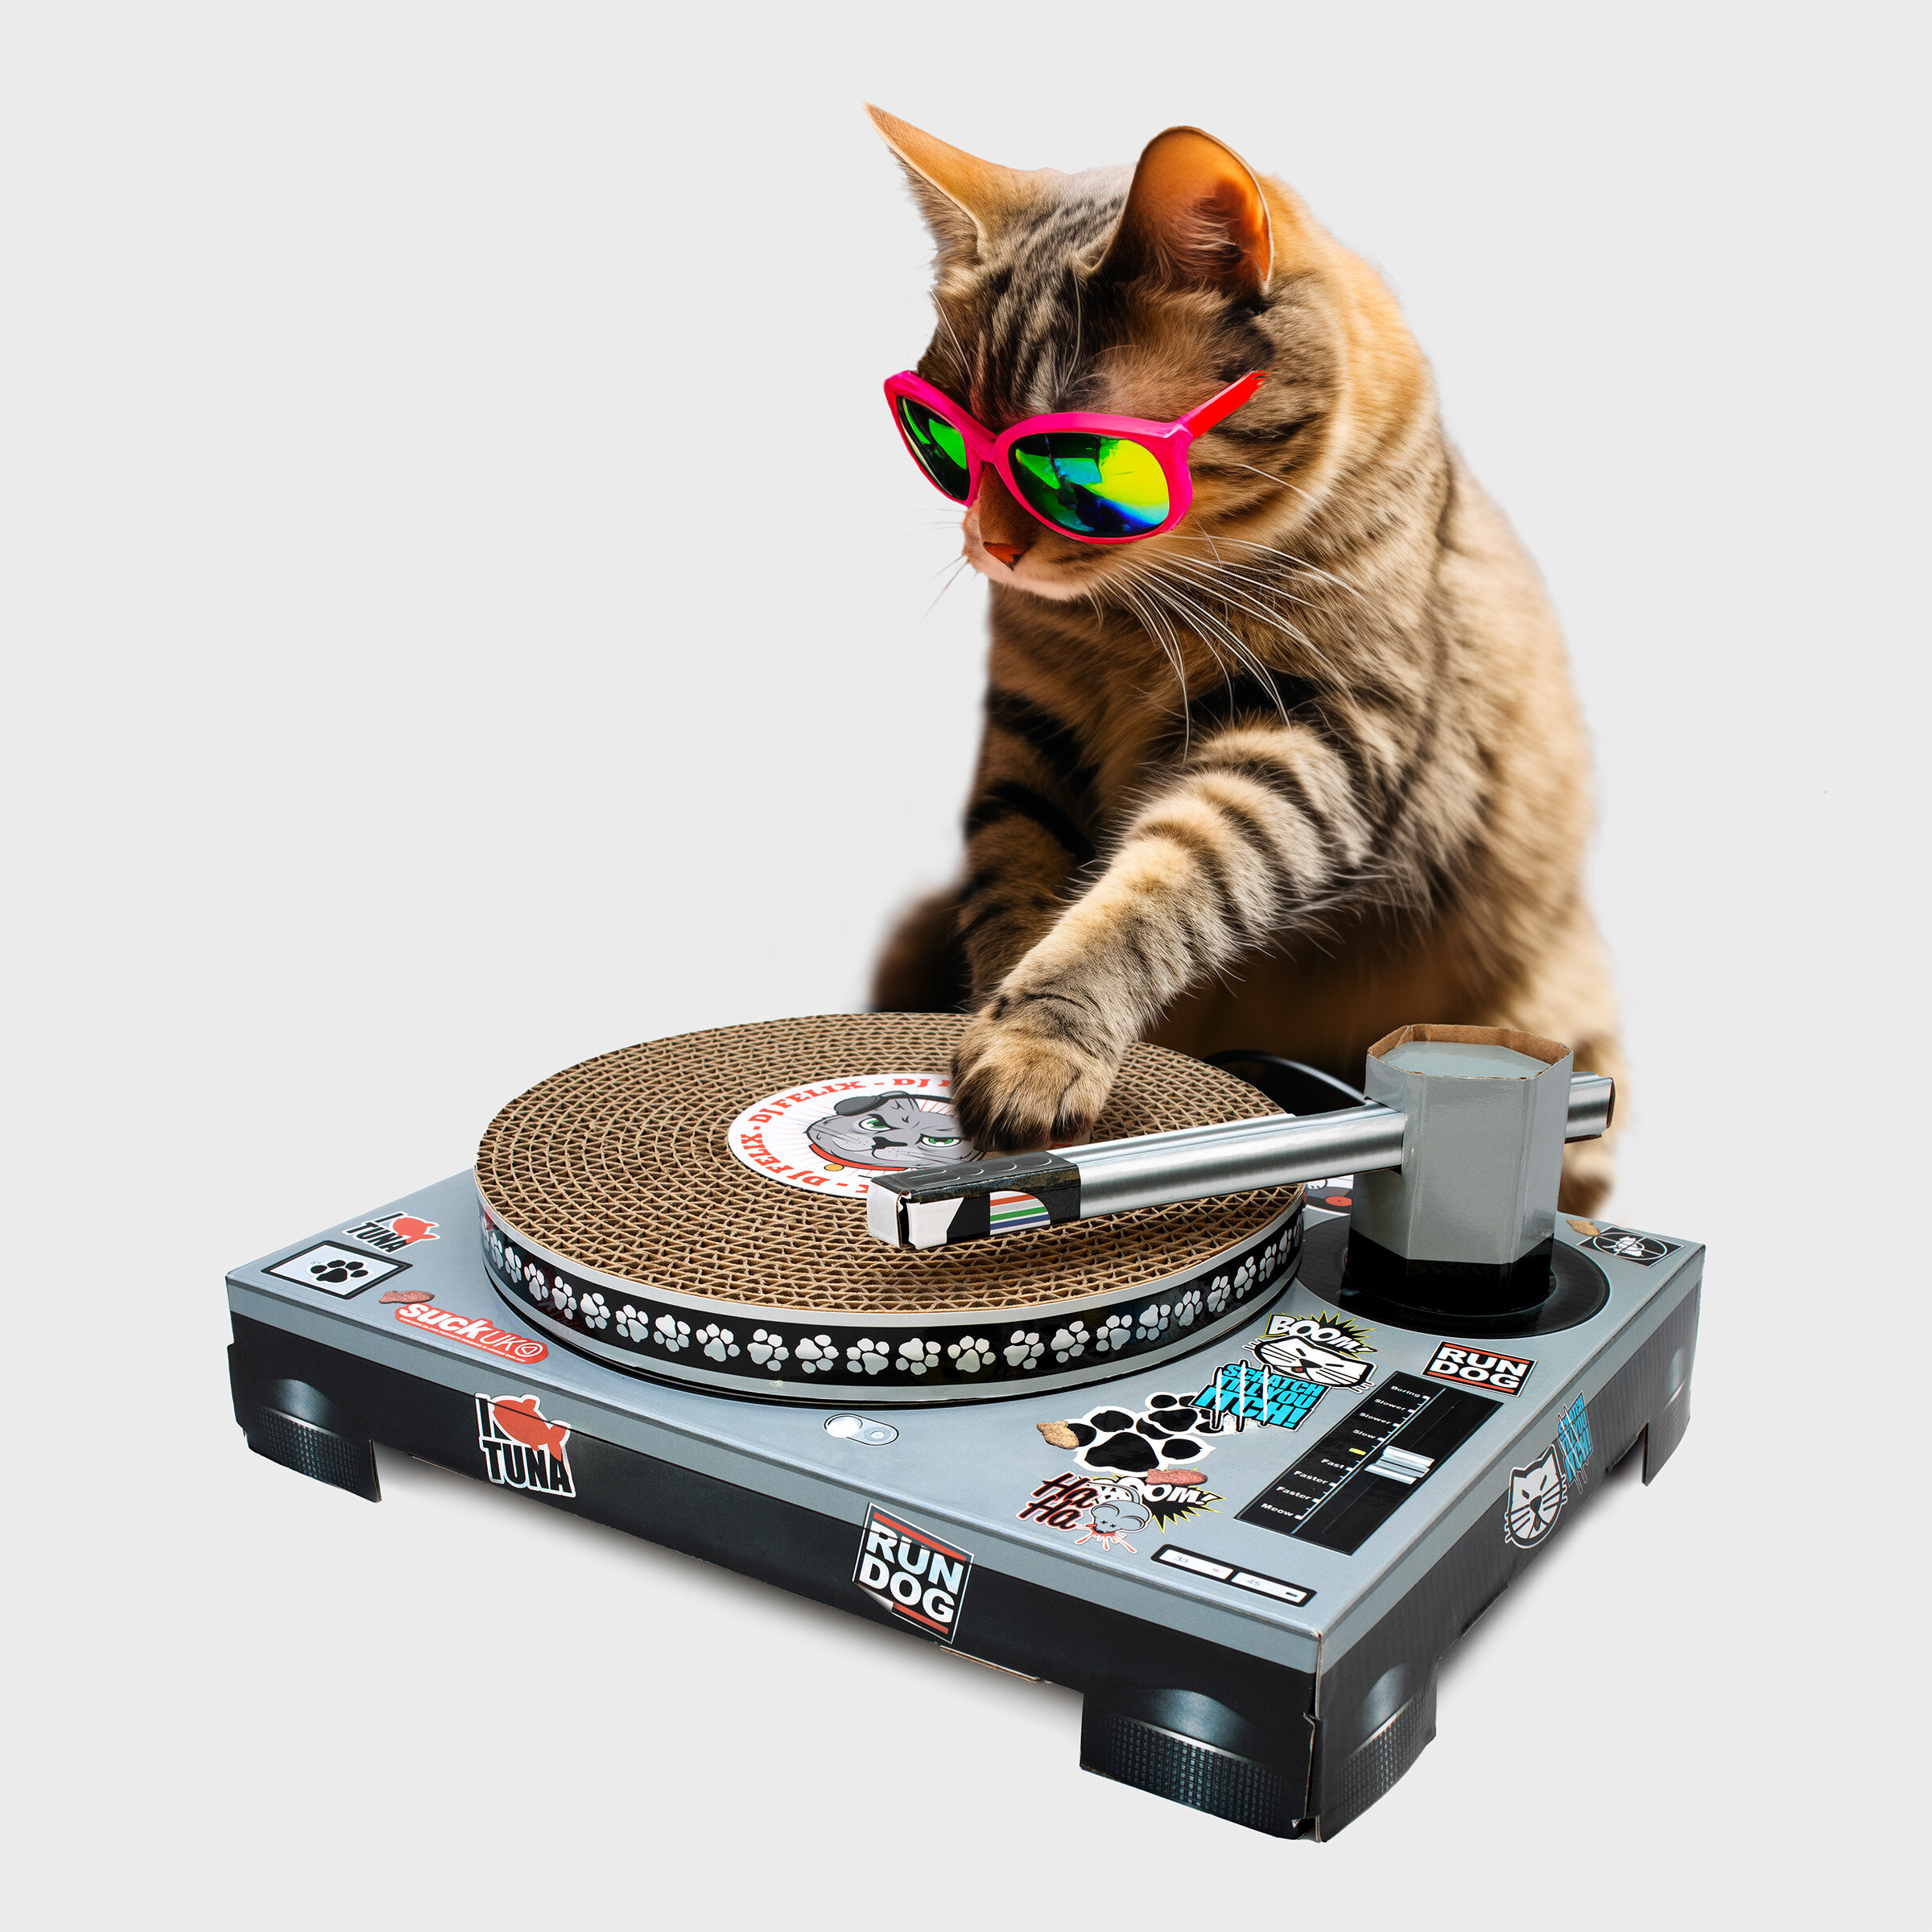 Cat scratching mat DJ